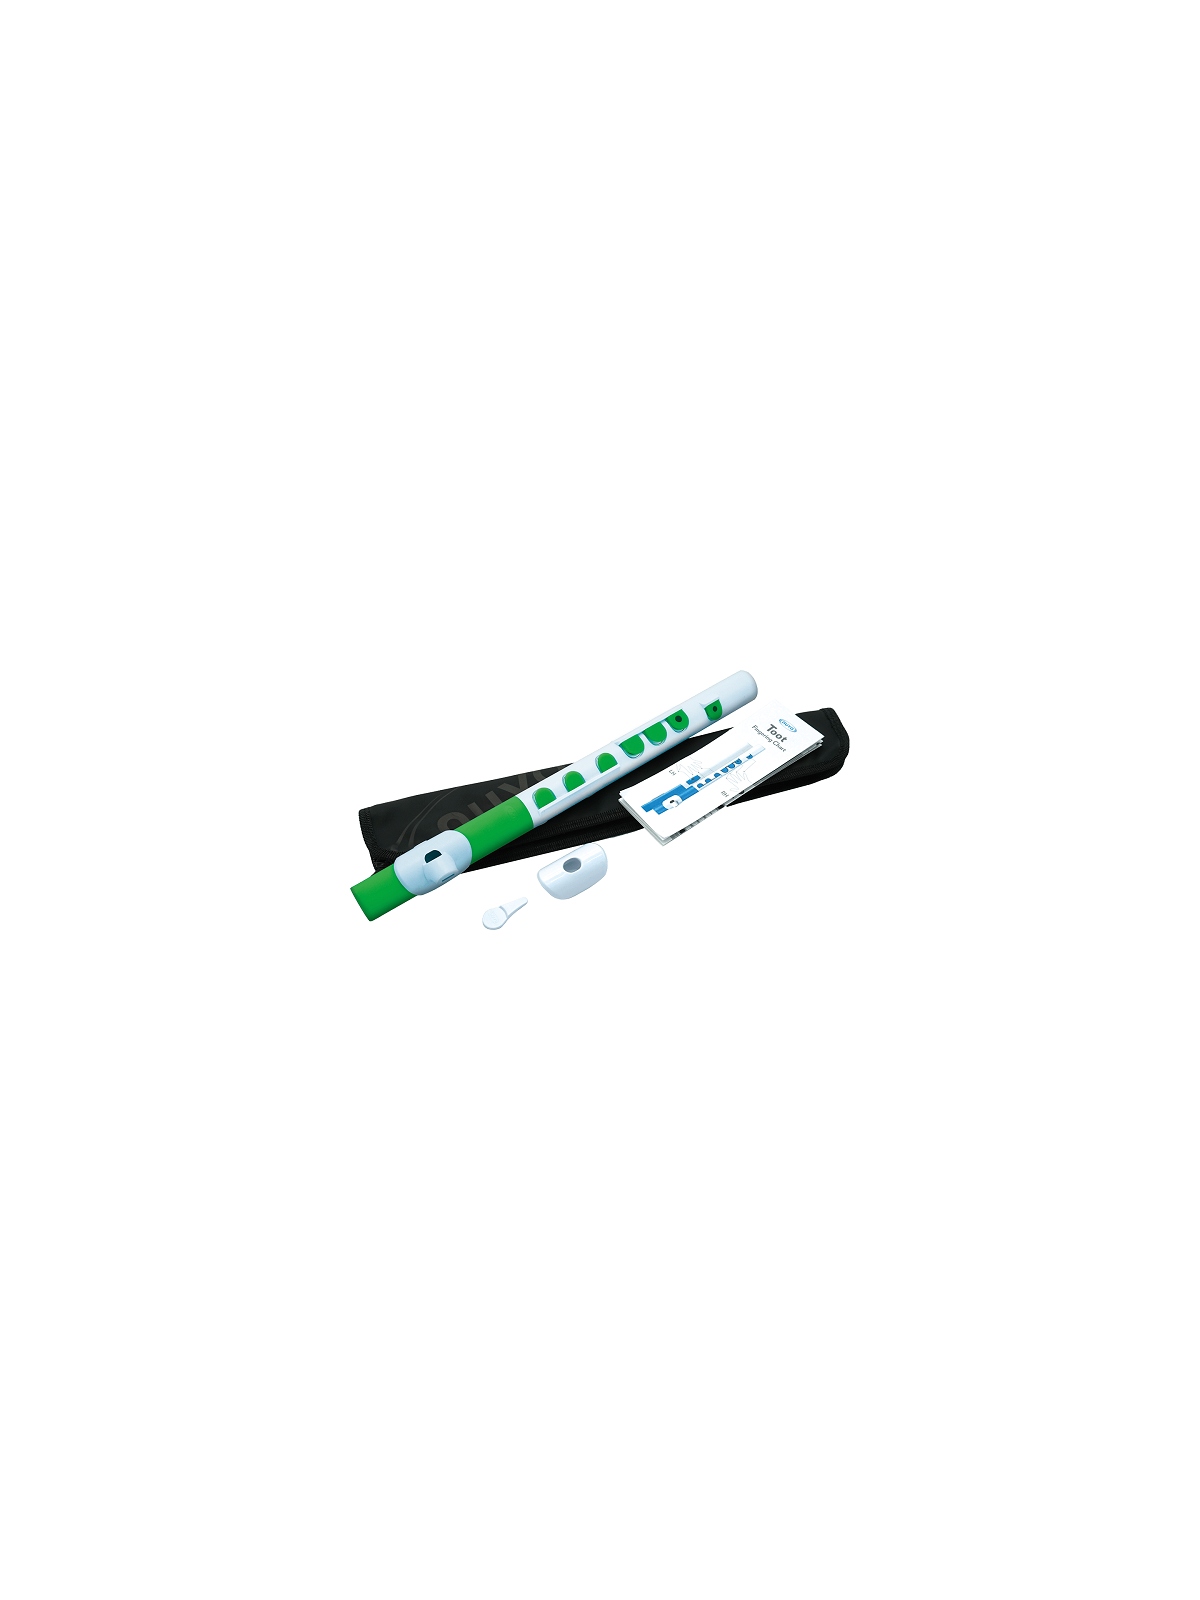 Nuvo - N430TWGN Flute blanc - vert